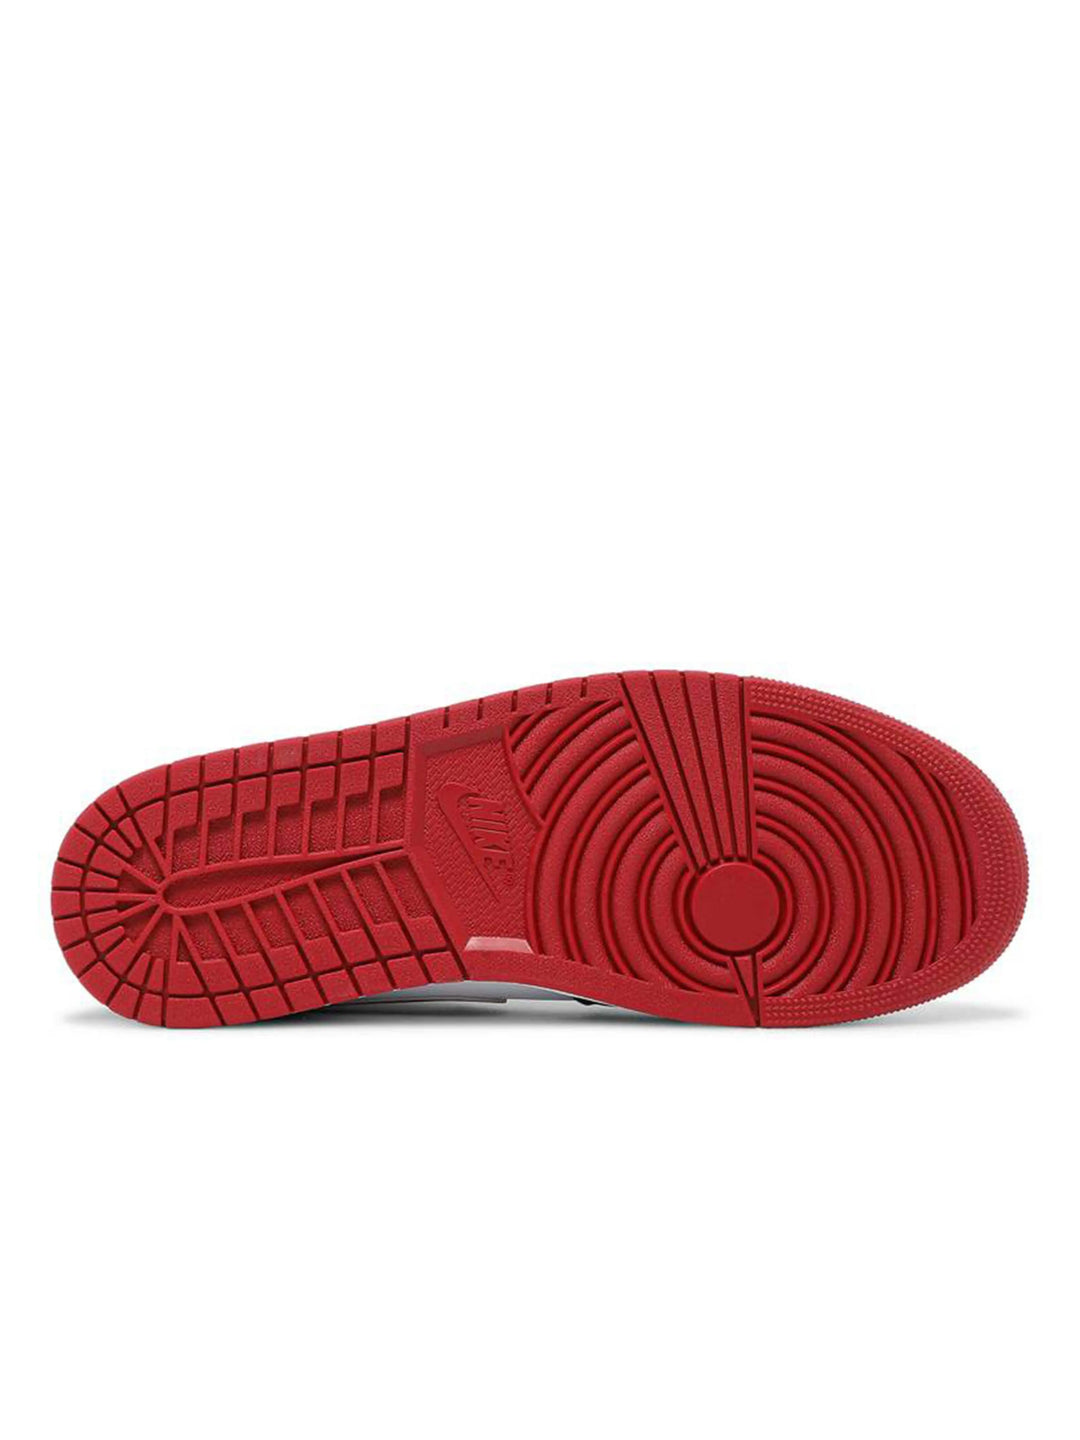 Nike Air Jordan 1 Mid White Red Black Gym Red [Damaged Box] Prior